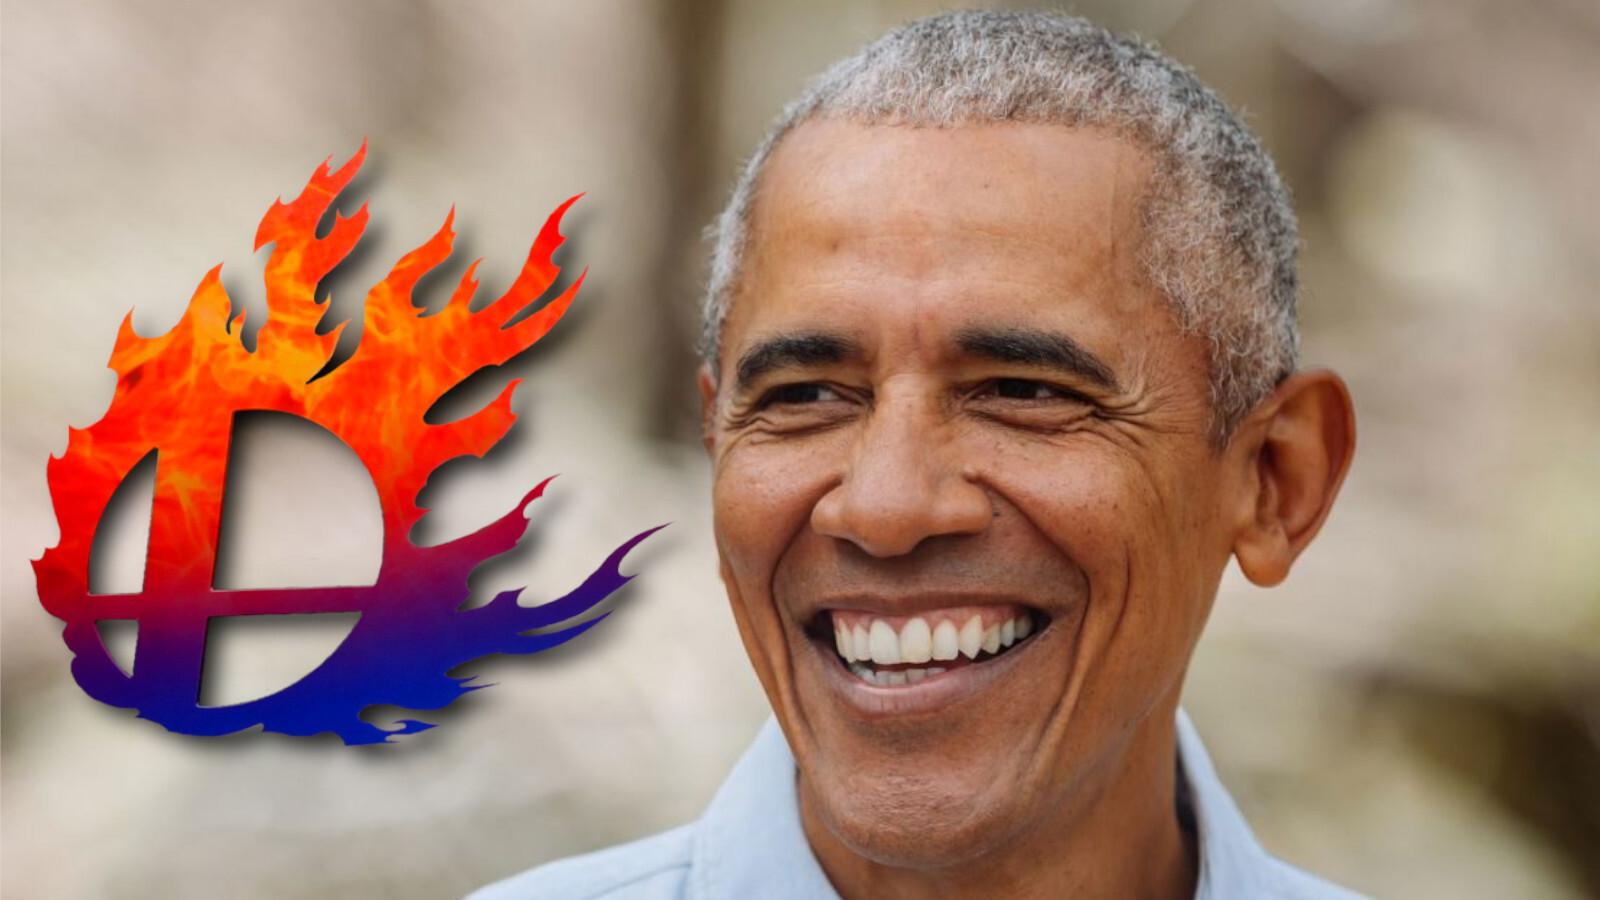 Barack Obama's Super Smash main is revealed